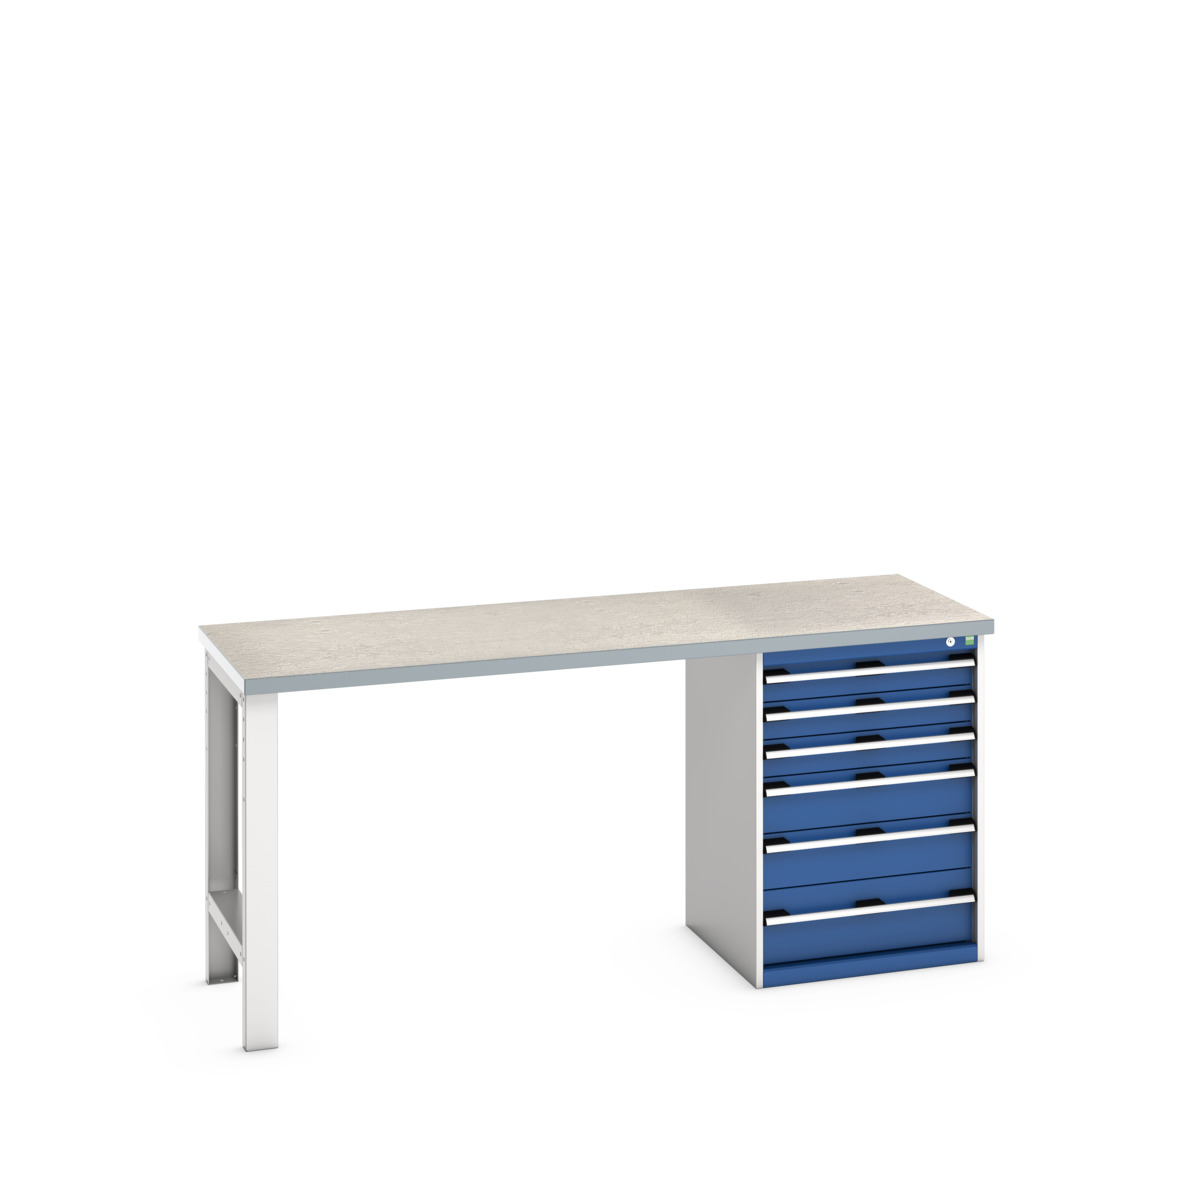 41003495.11V - cubio pedestal bench (lino)